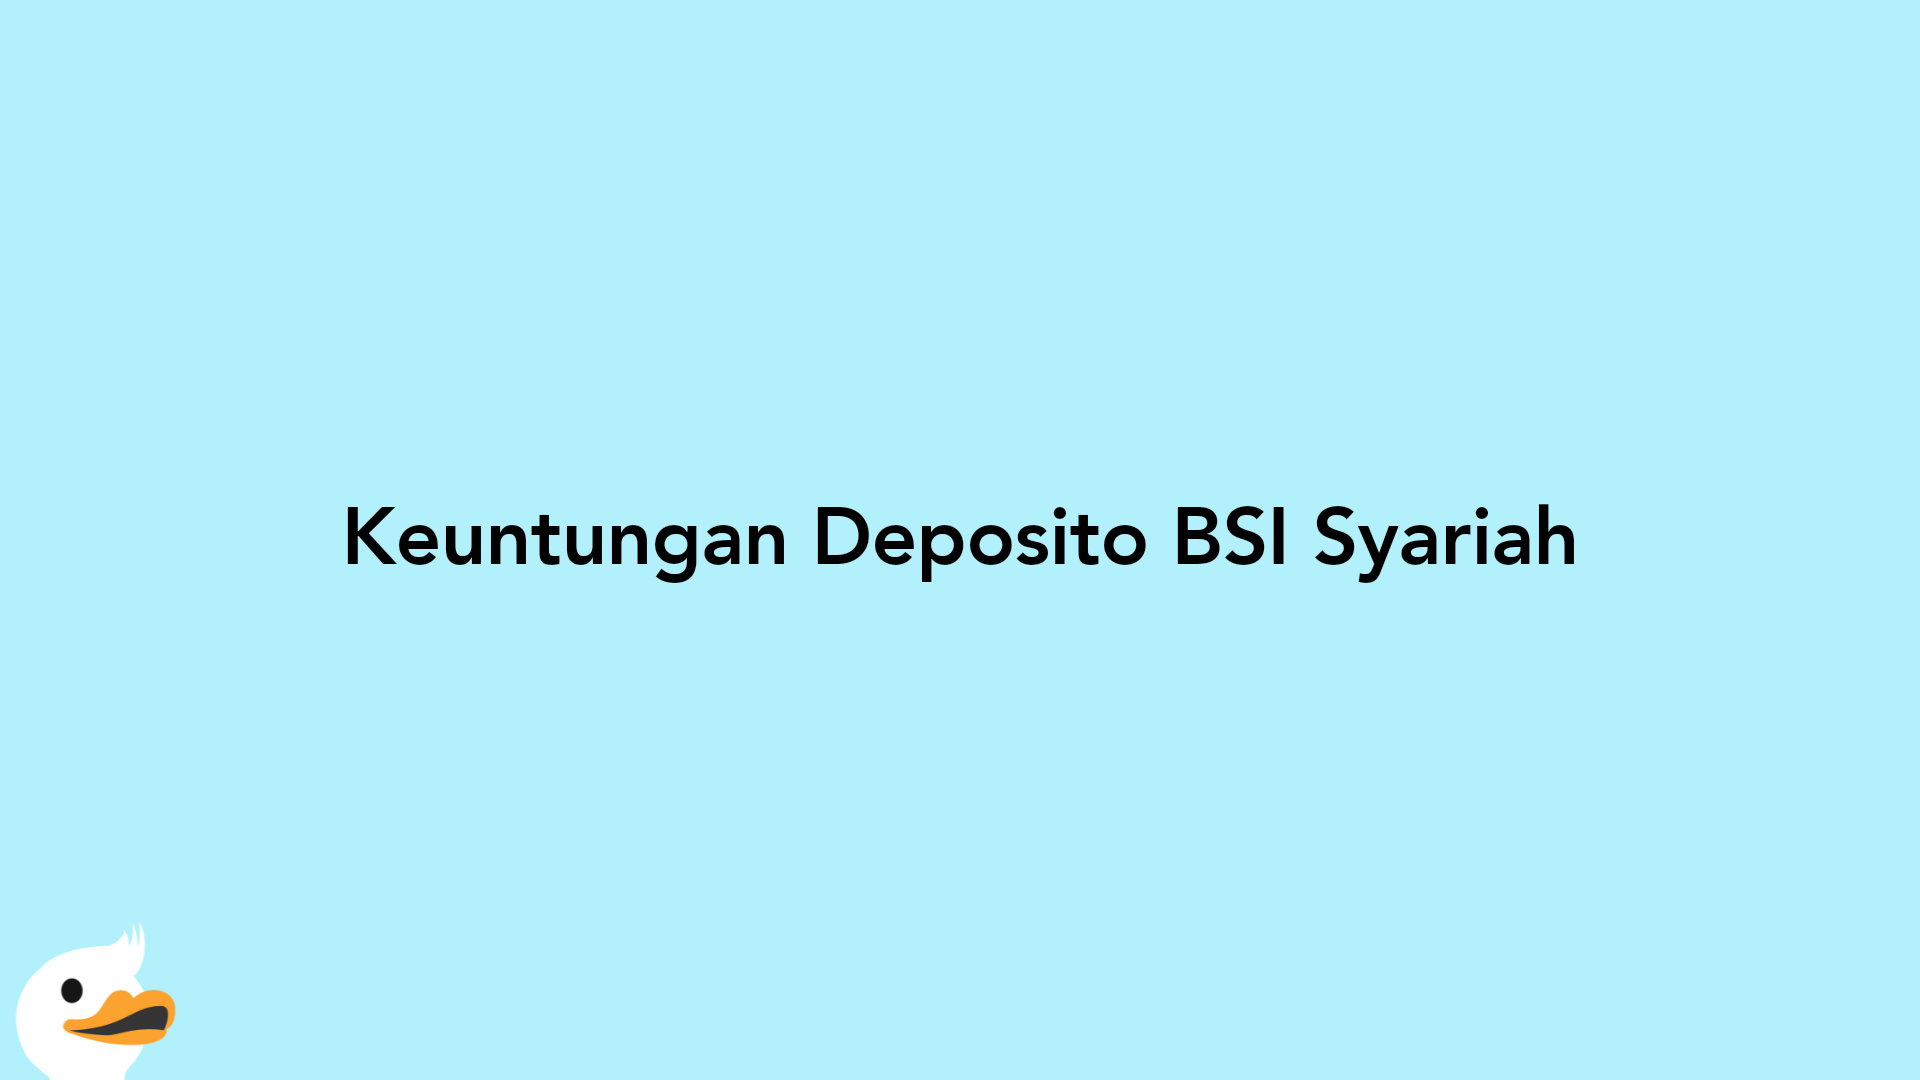 Keuntungan Deposito BSI Syariah